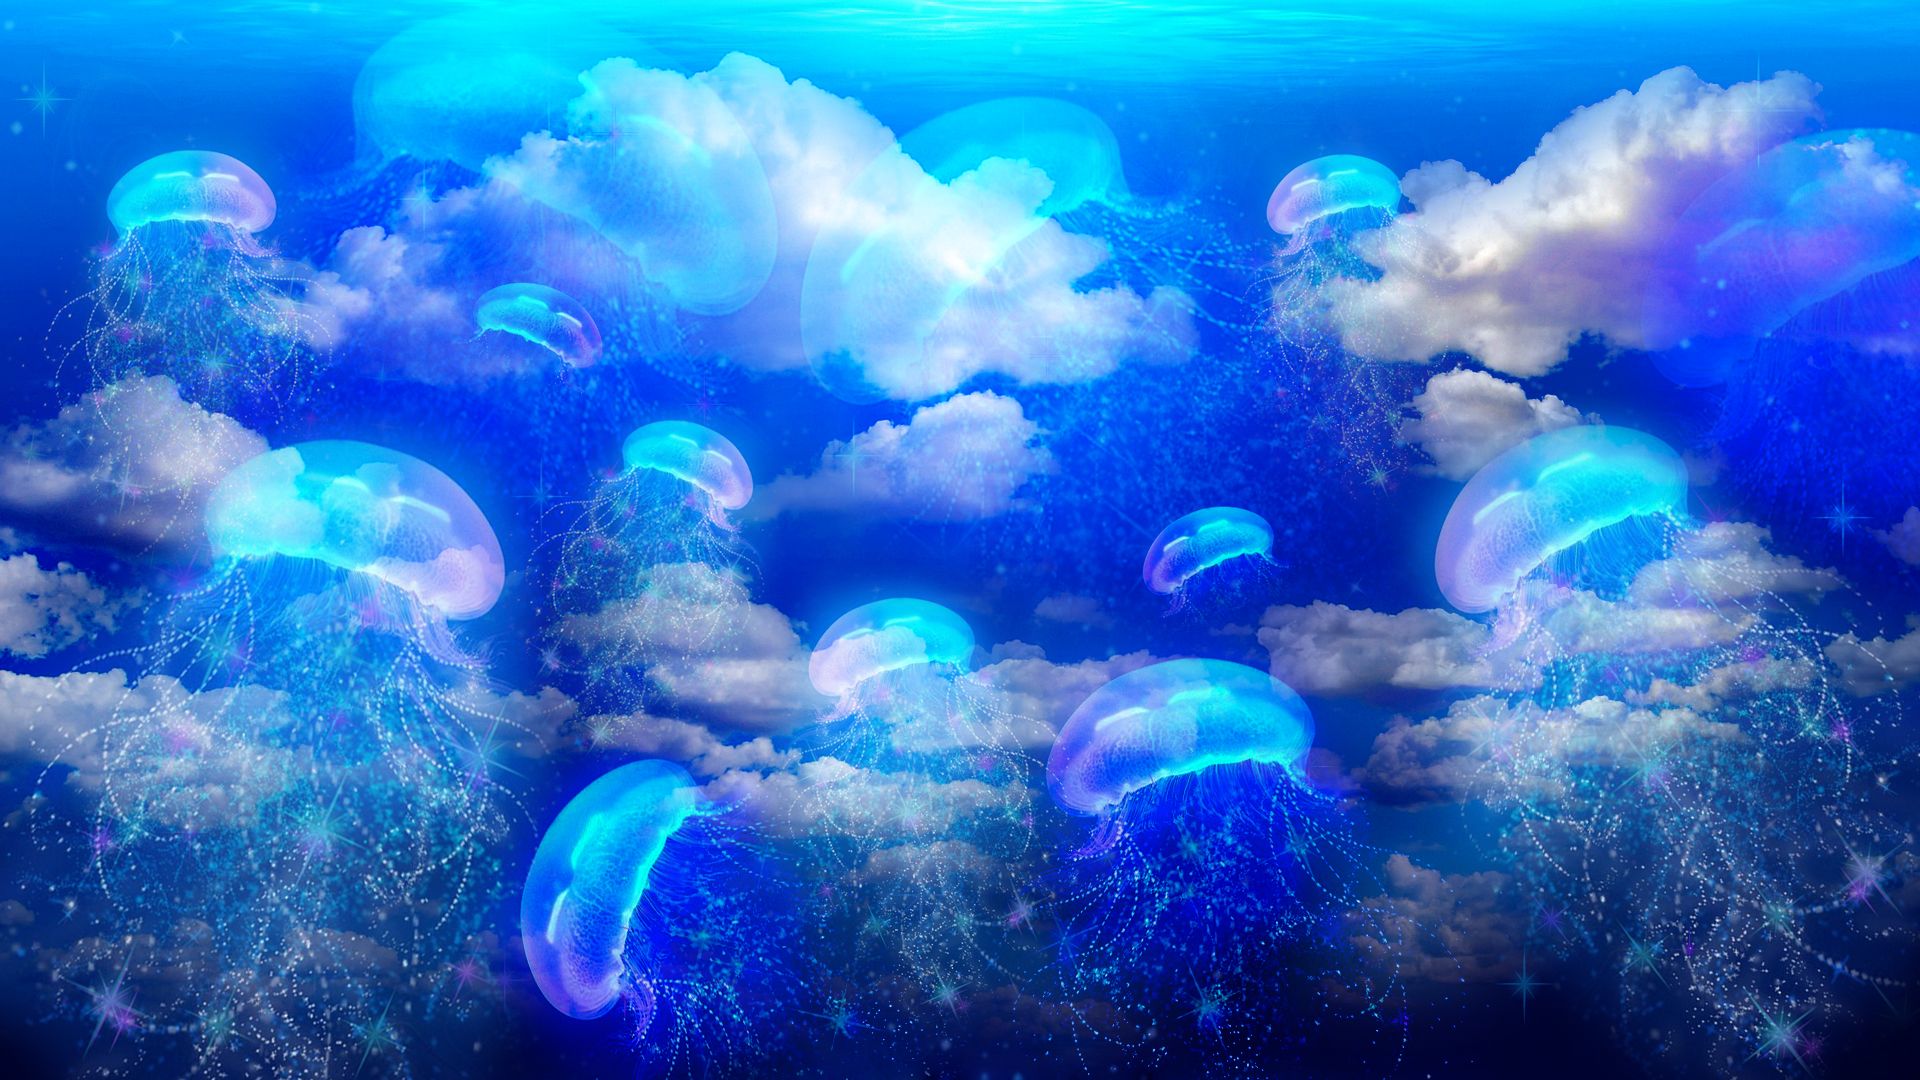 Mirada de medusa 4.jpg